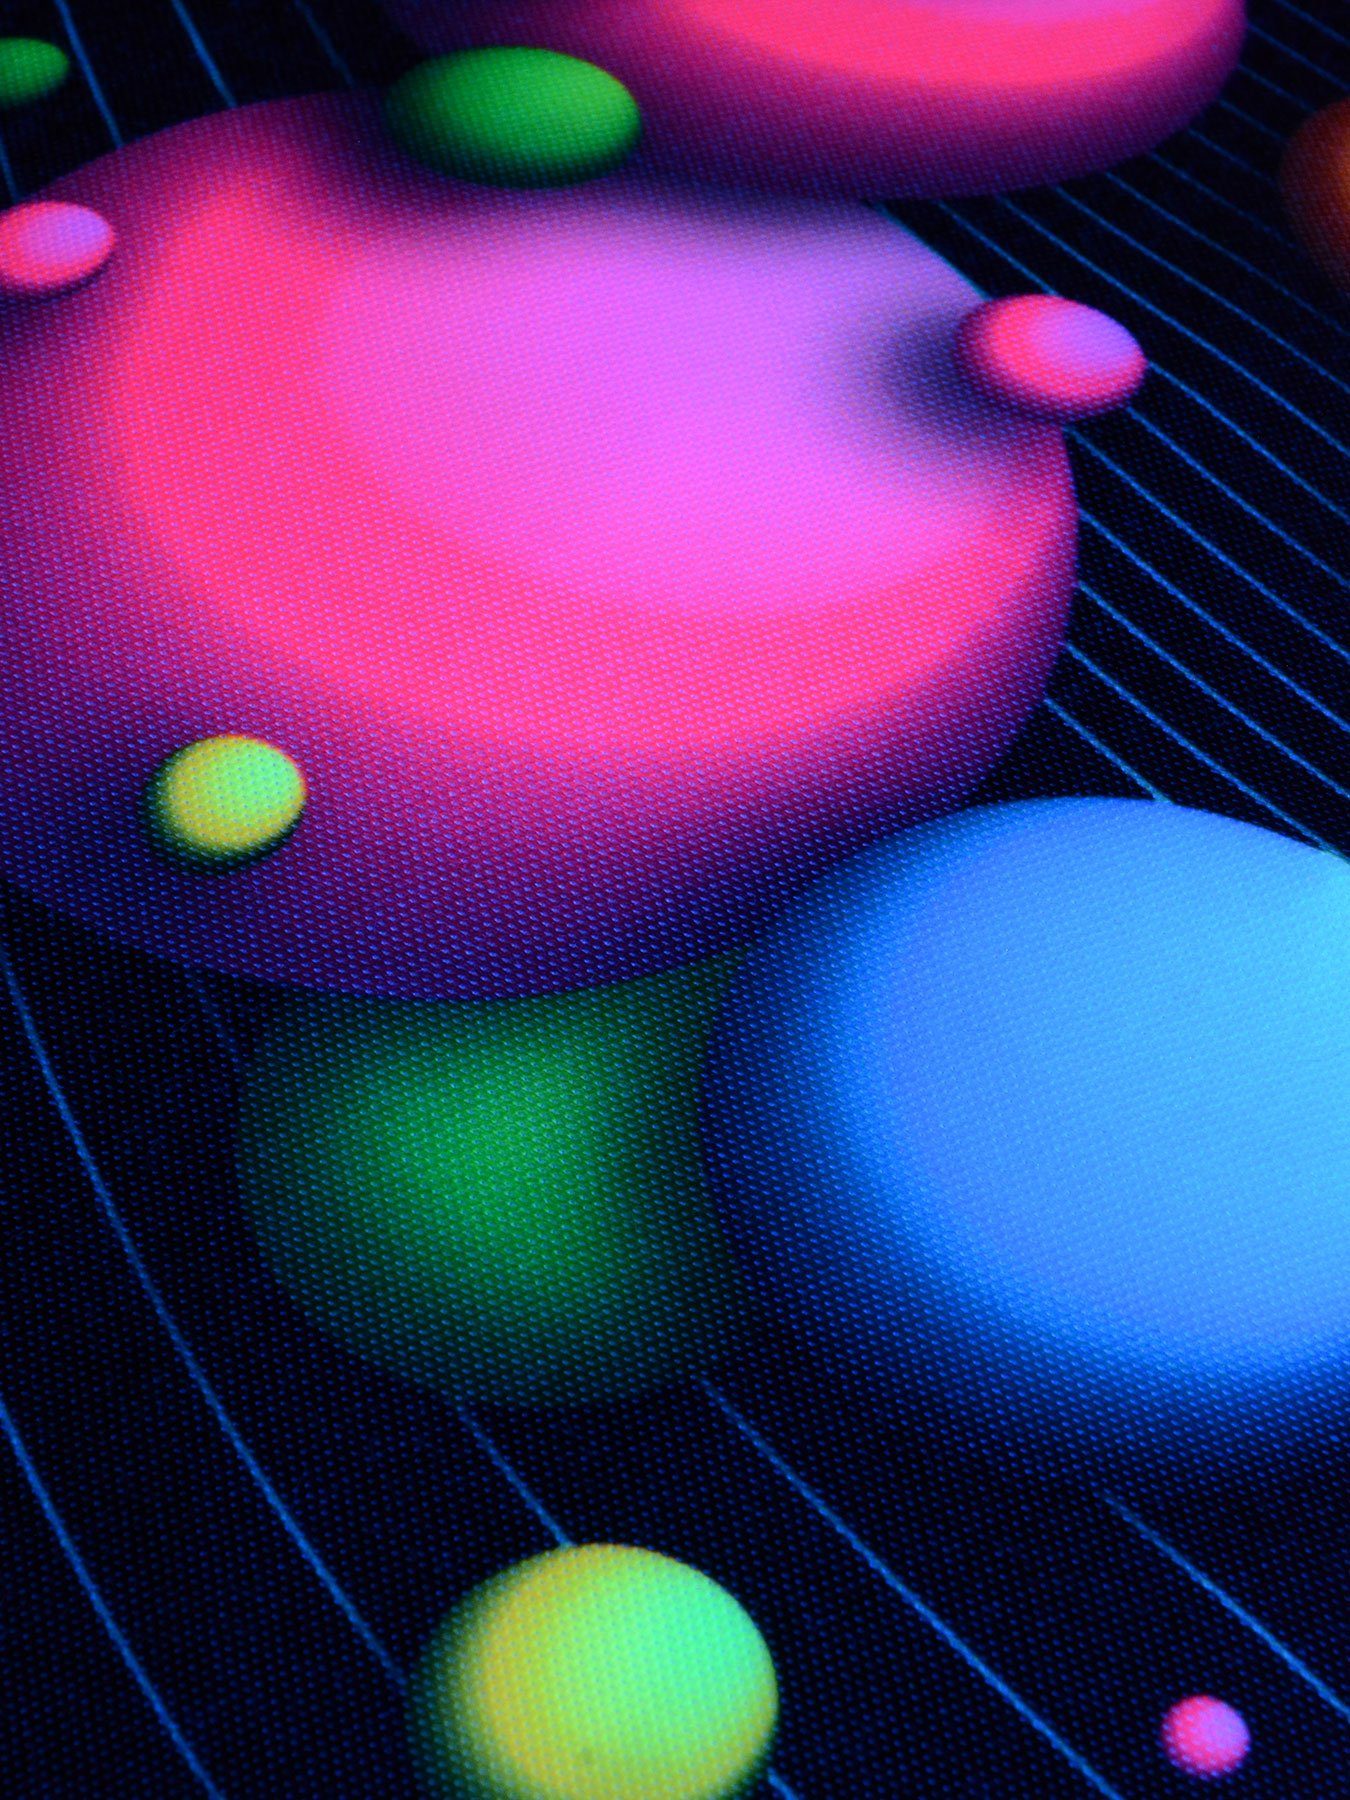 Schwarzlicht Dekokissen leuchtet 30x50cm, Bubbles", PSYWORK Kissen UV-aktiv, Neon "Happy Schwarzlicht unter